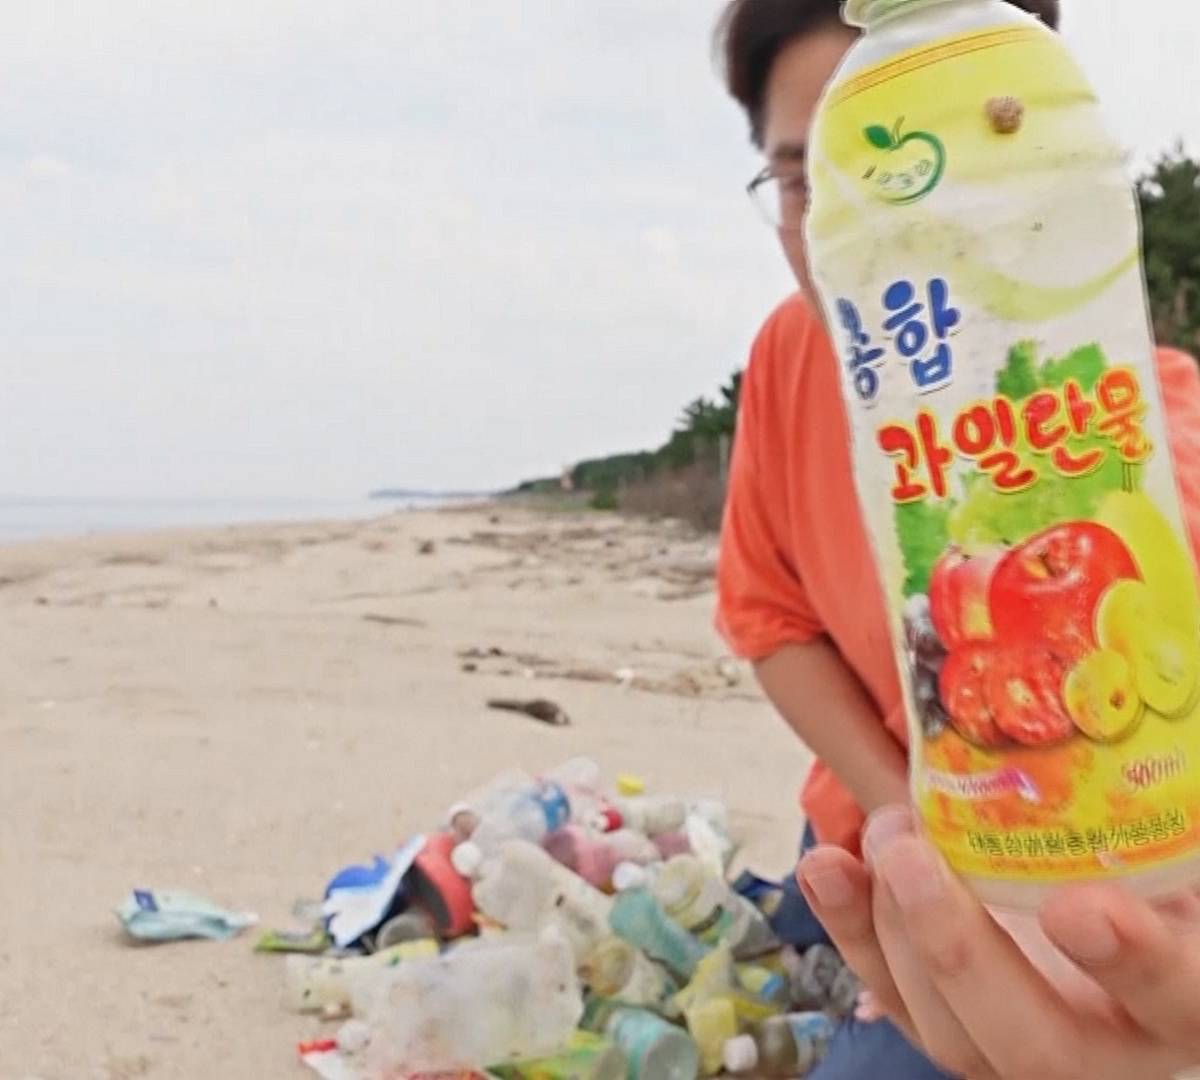 О жизни в КНДР южнокорейский профессор рассуждает по прибившемуся к берегу мусору